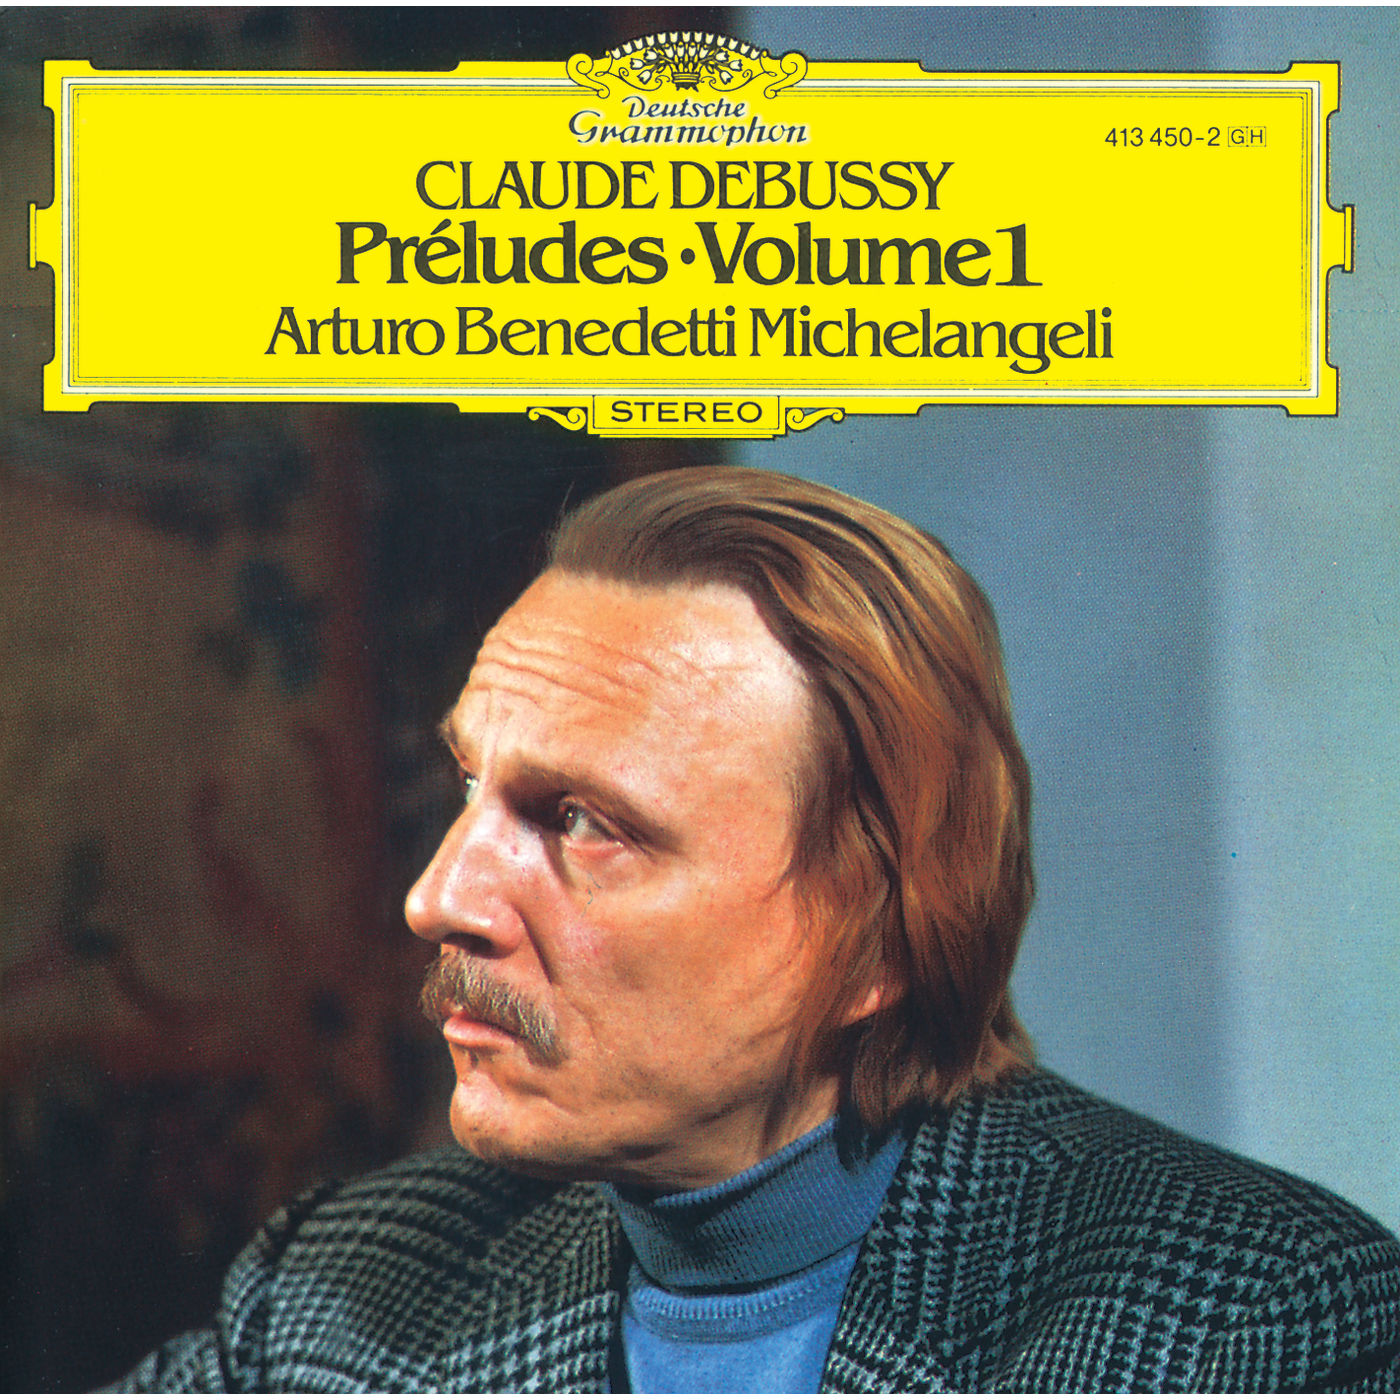 Arturo Benedetti Michelangeli - Debussy: Preludes I (1978/2020) [FLAC 24bit/192kHz]